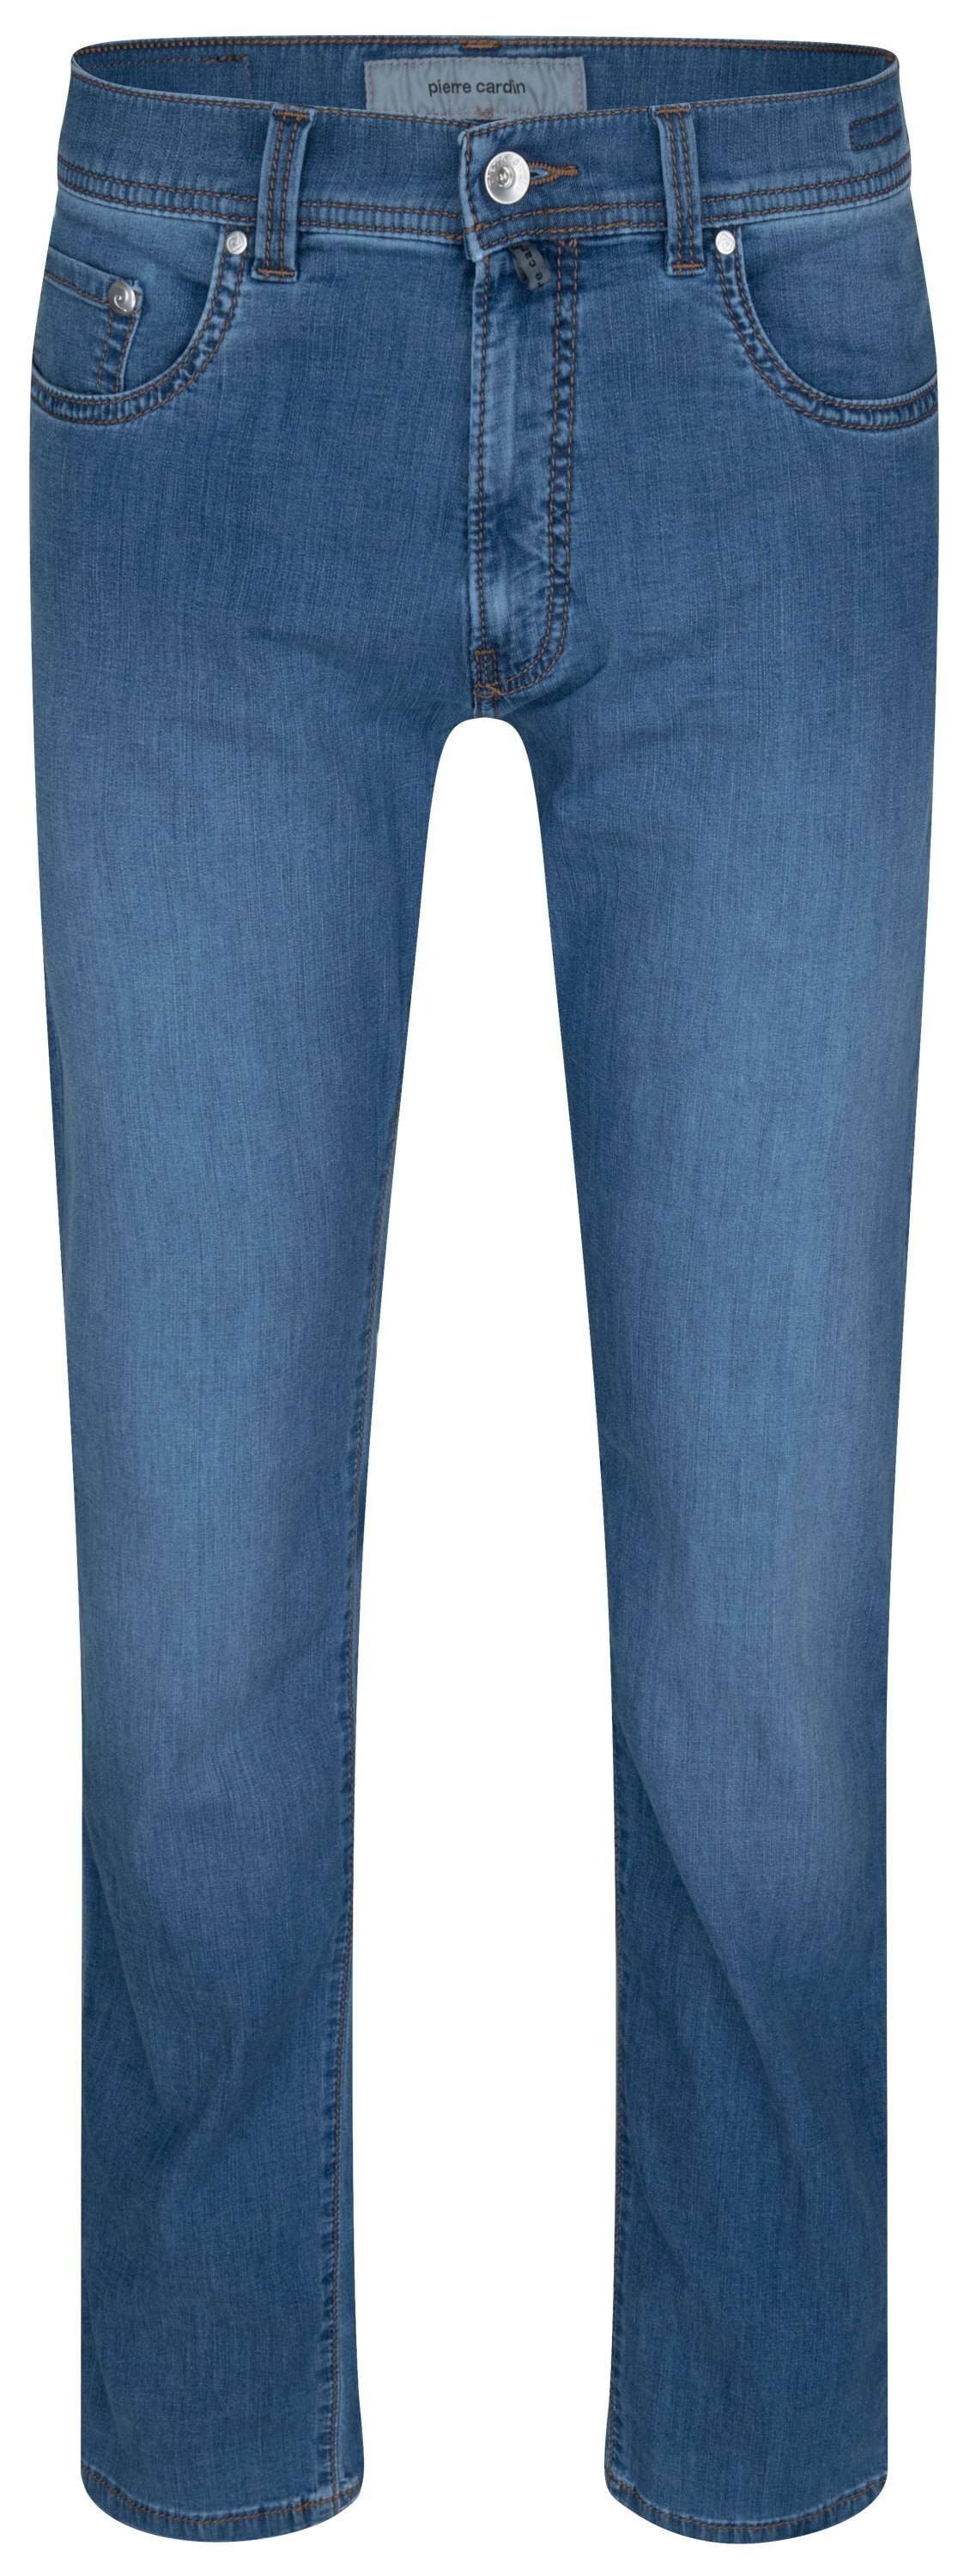 Cardin Pierre CARDIN PIERRE fashion TAPERED LYON 34510 - ocean 5-Pocket-Jeans FUTURE blue 7730.6837